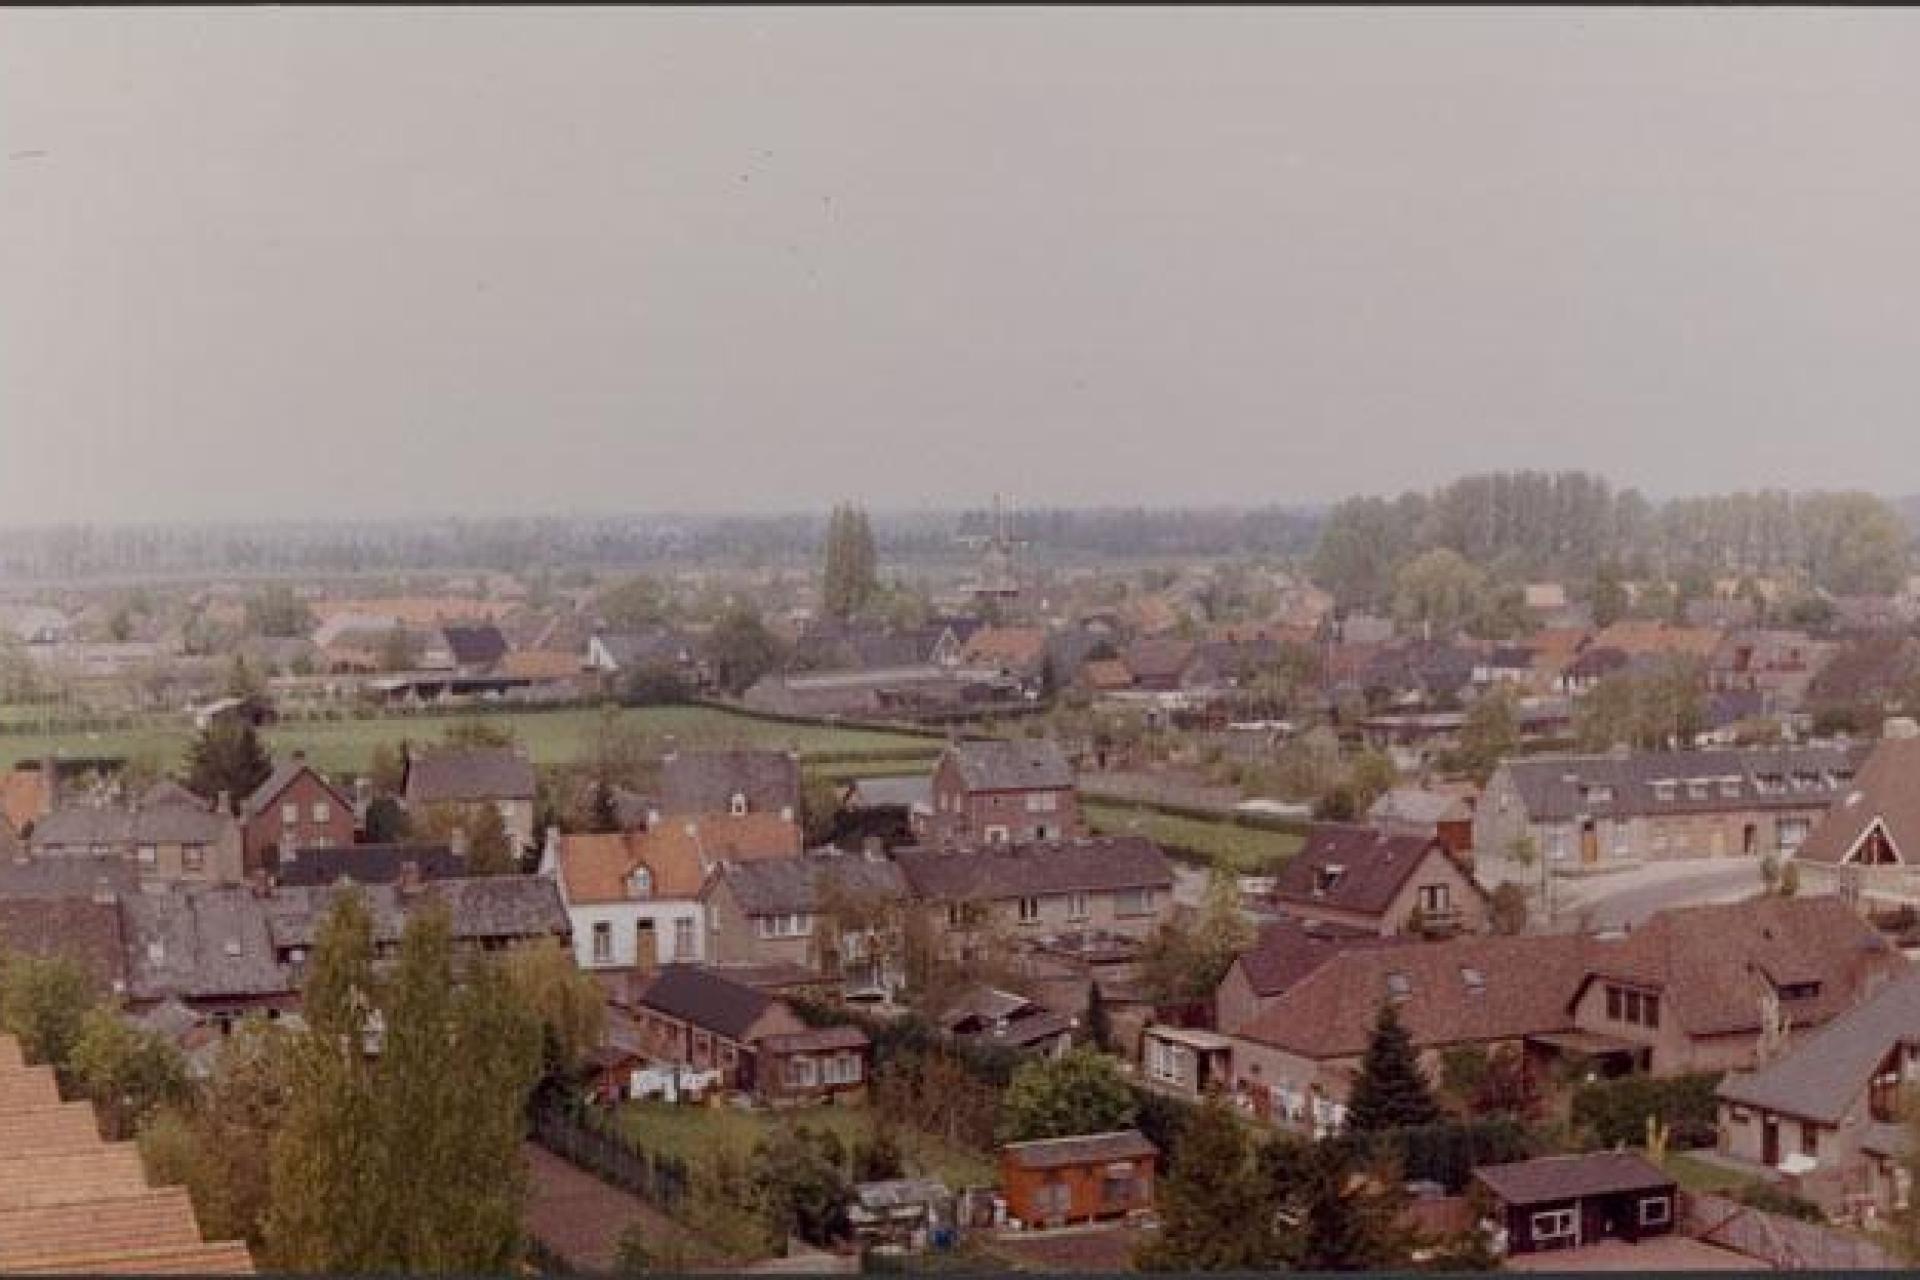 Luchtfoto met daarop huizen en weilanden